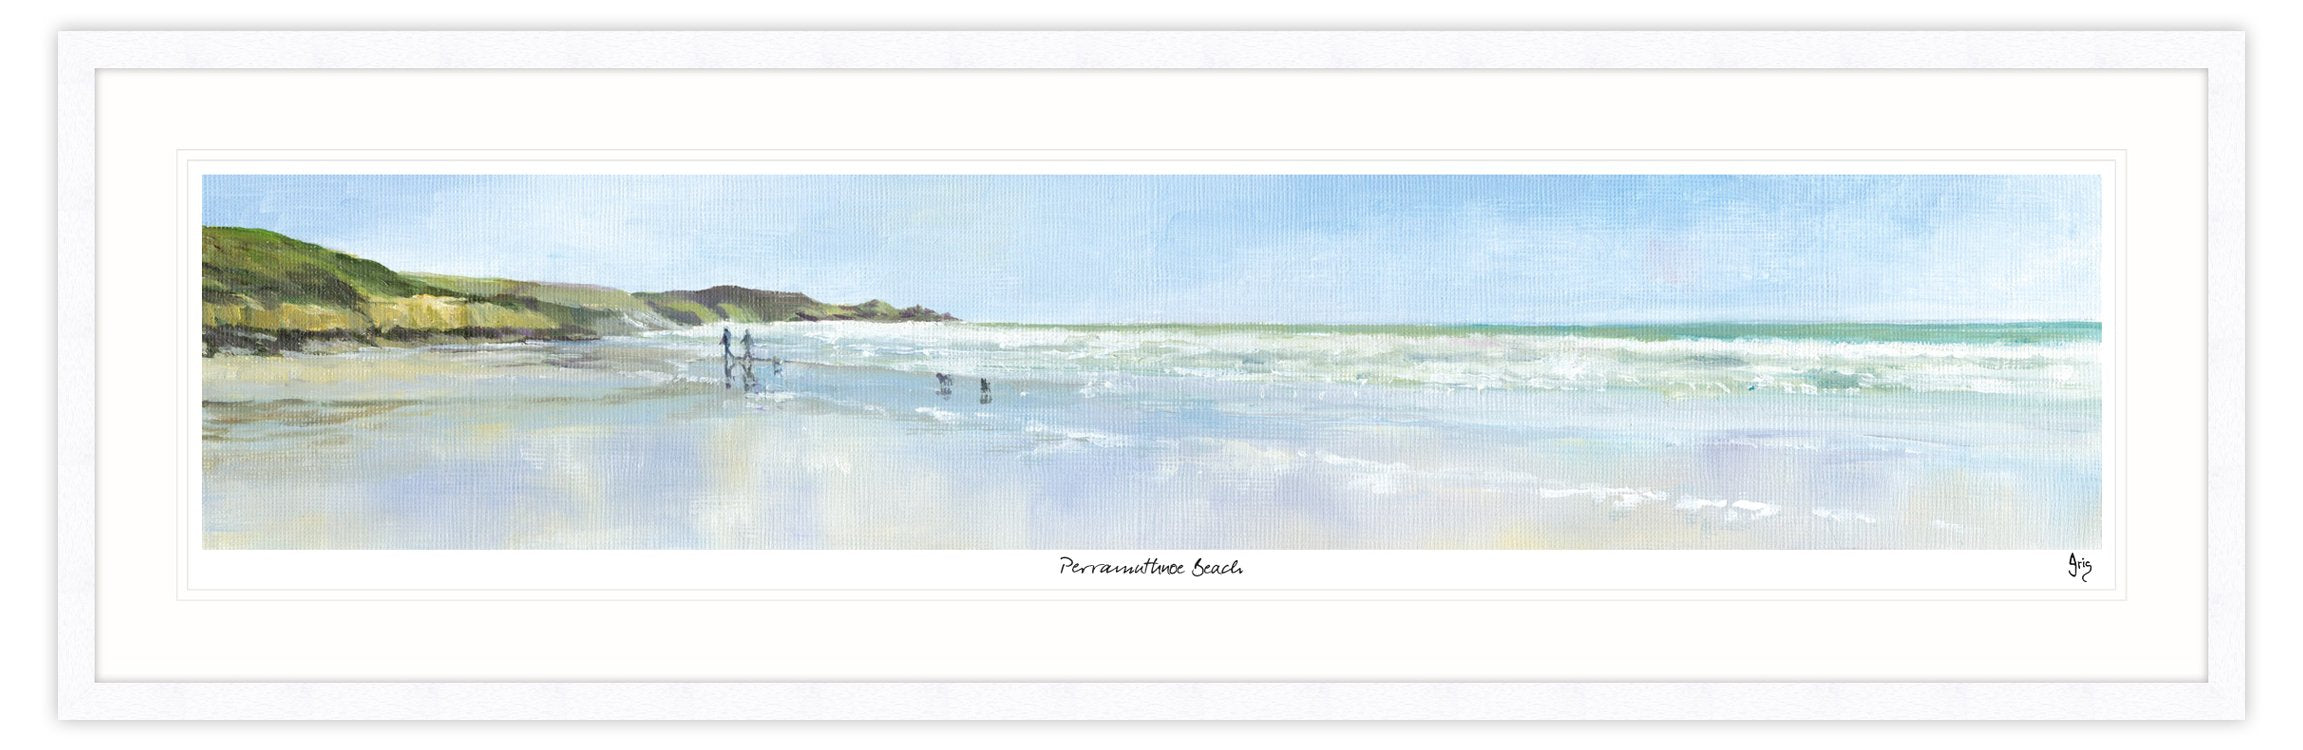 Perranuthnoe Beach Framed Print